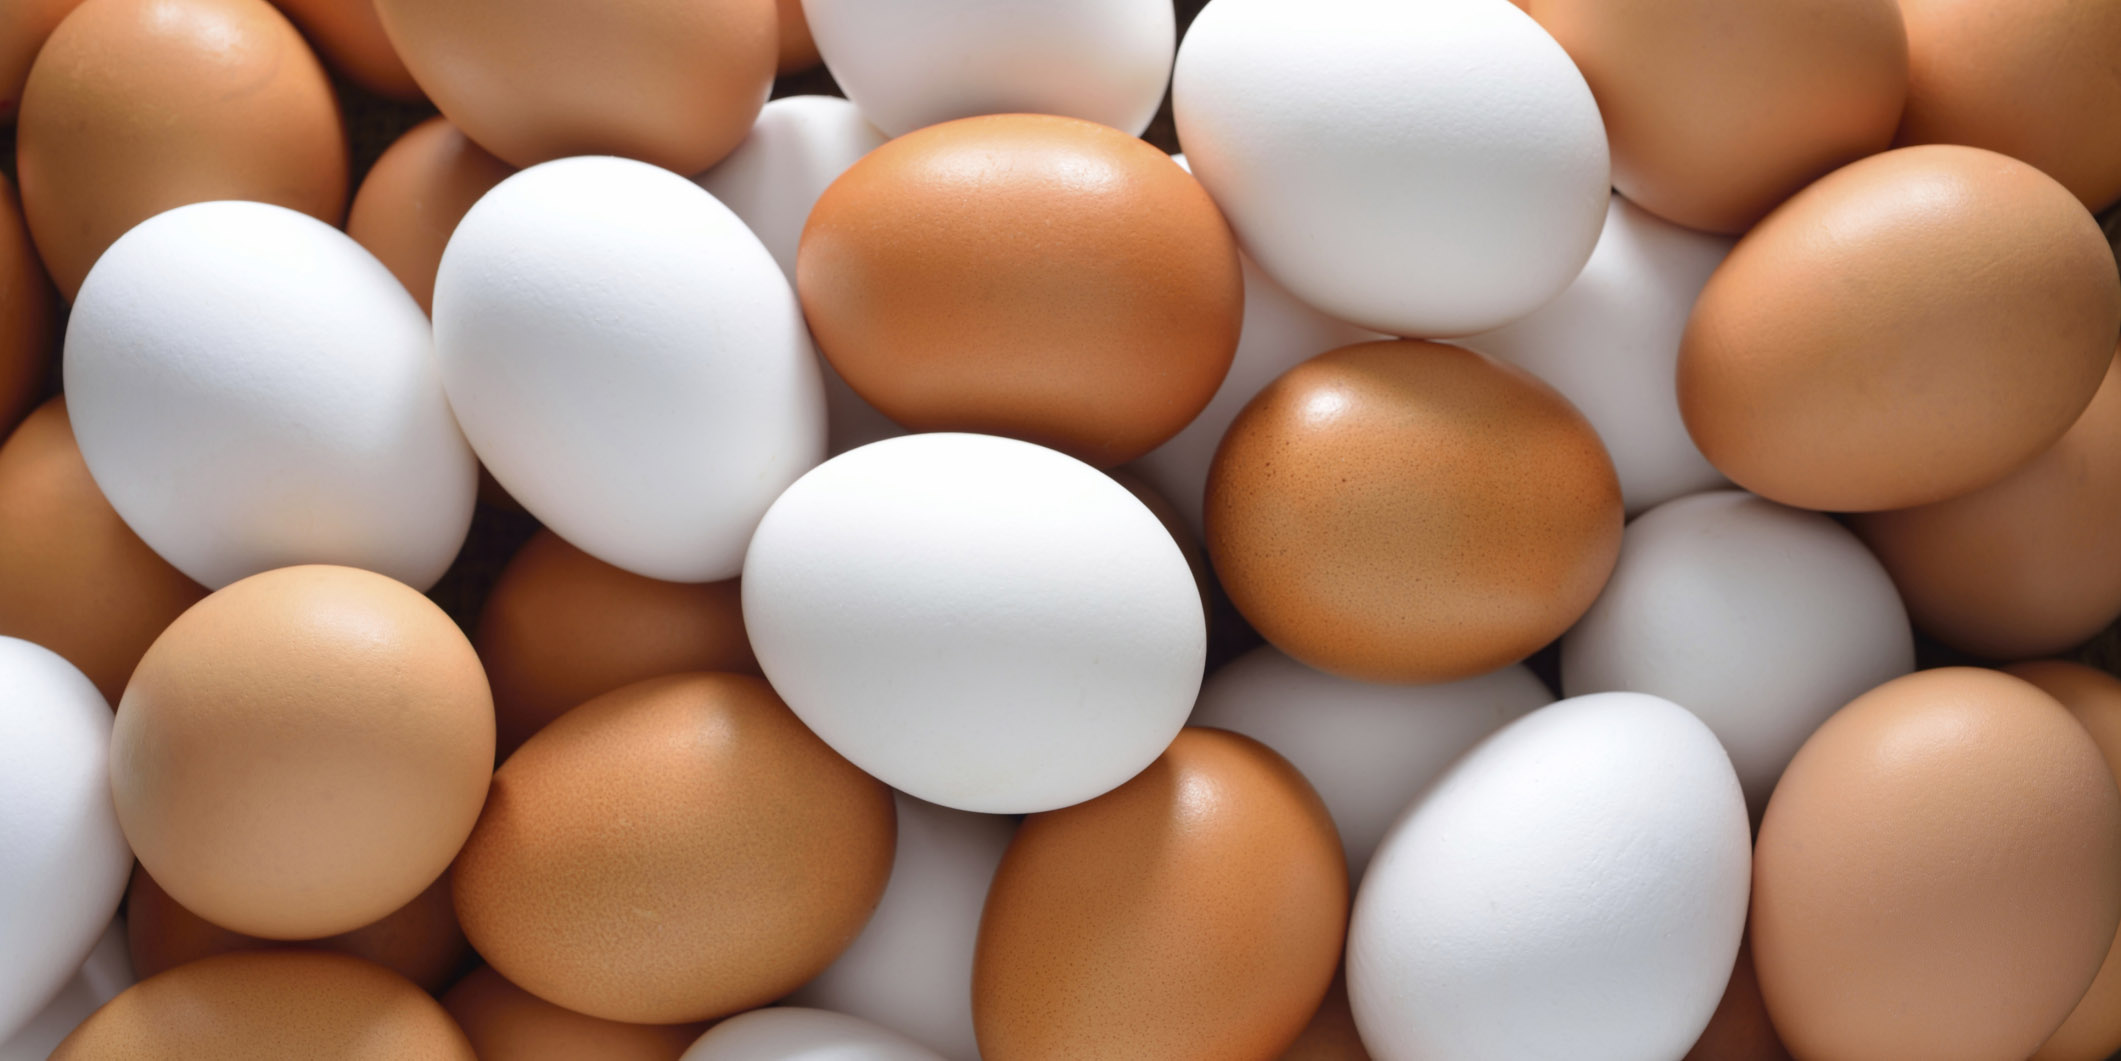 صادرات مجدد تخم مرغ با اما و اگرهایی همراه است